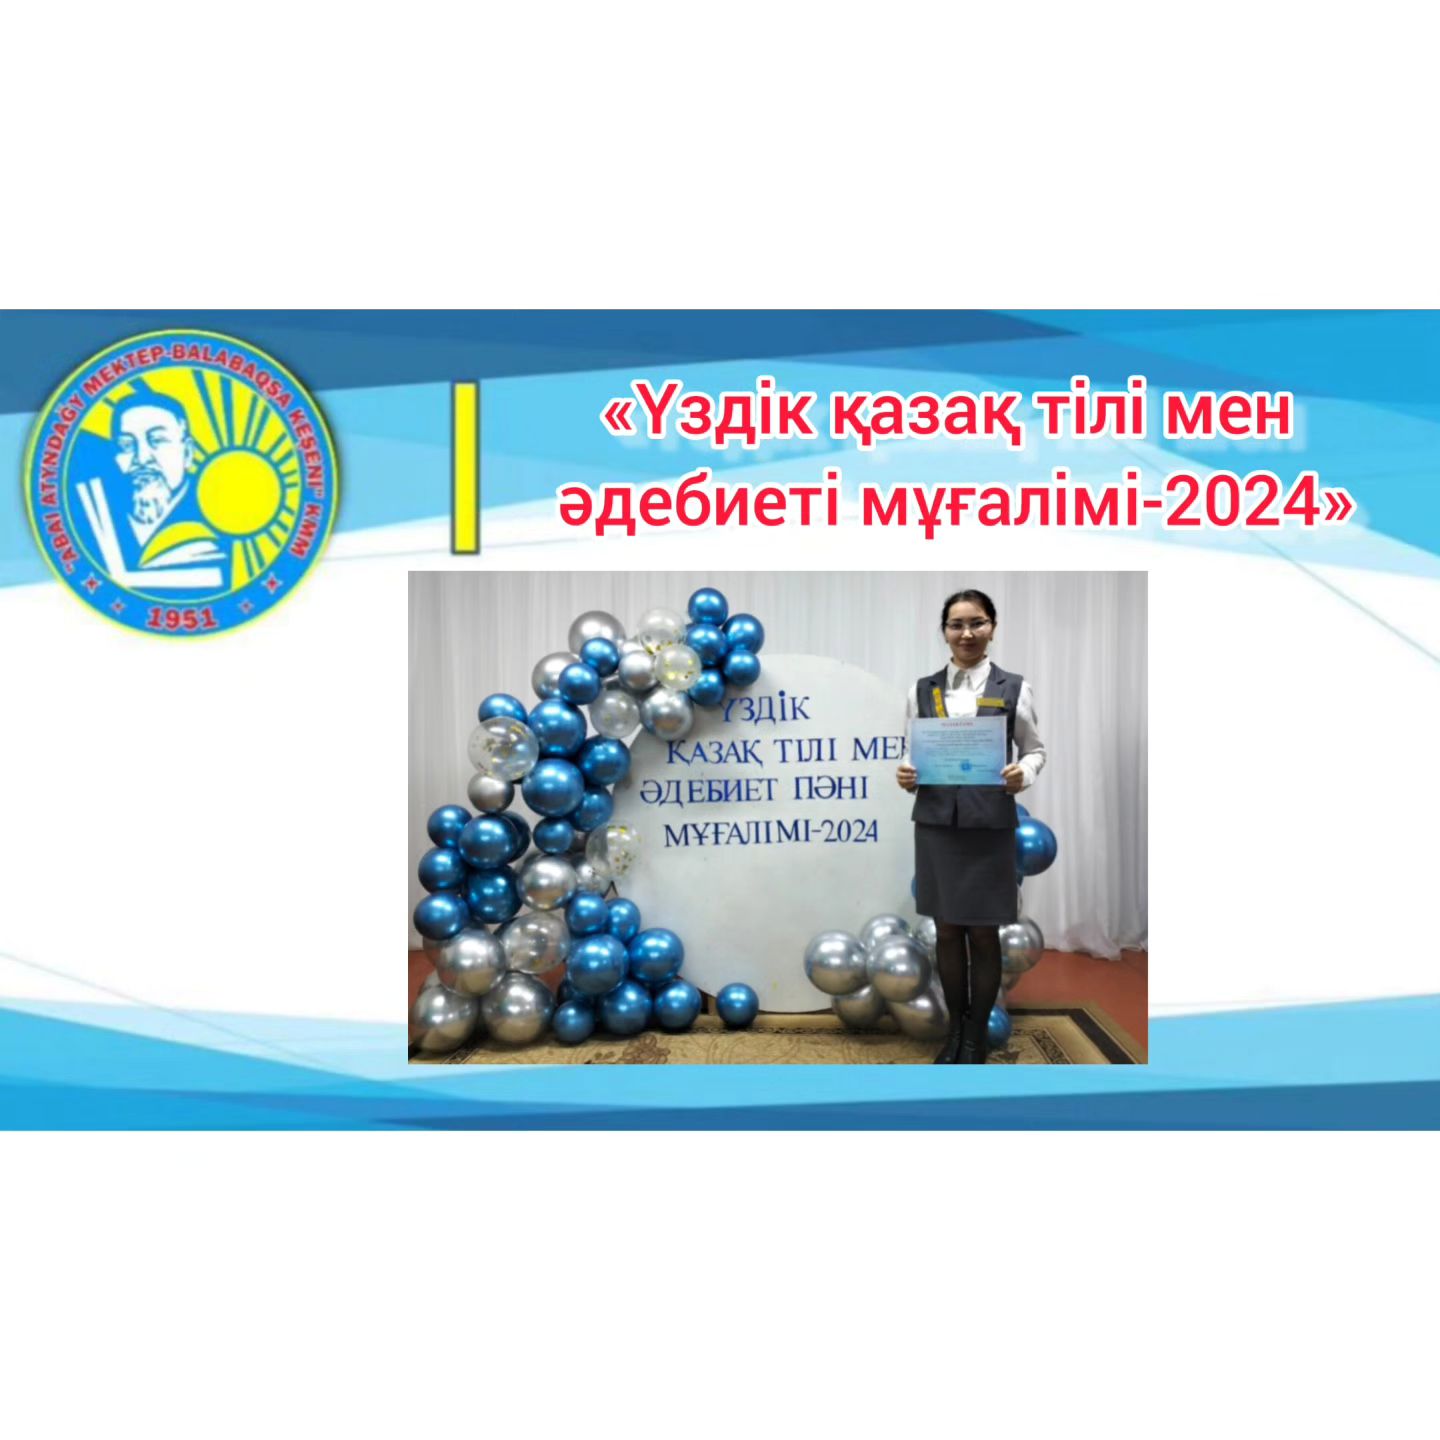 «Best қазақ тілі мен әдебиеті мұғалімі-2024» аудандық байқауы